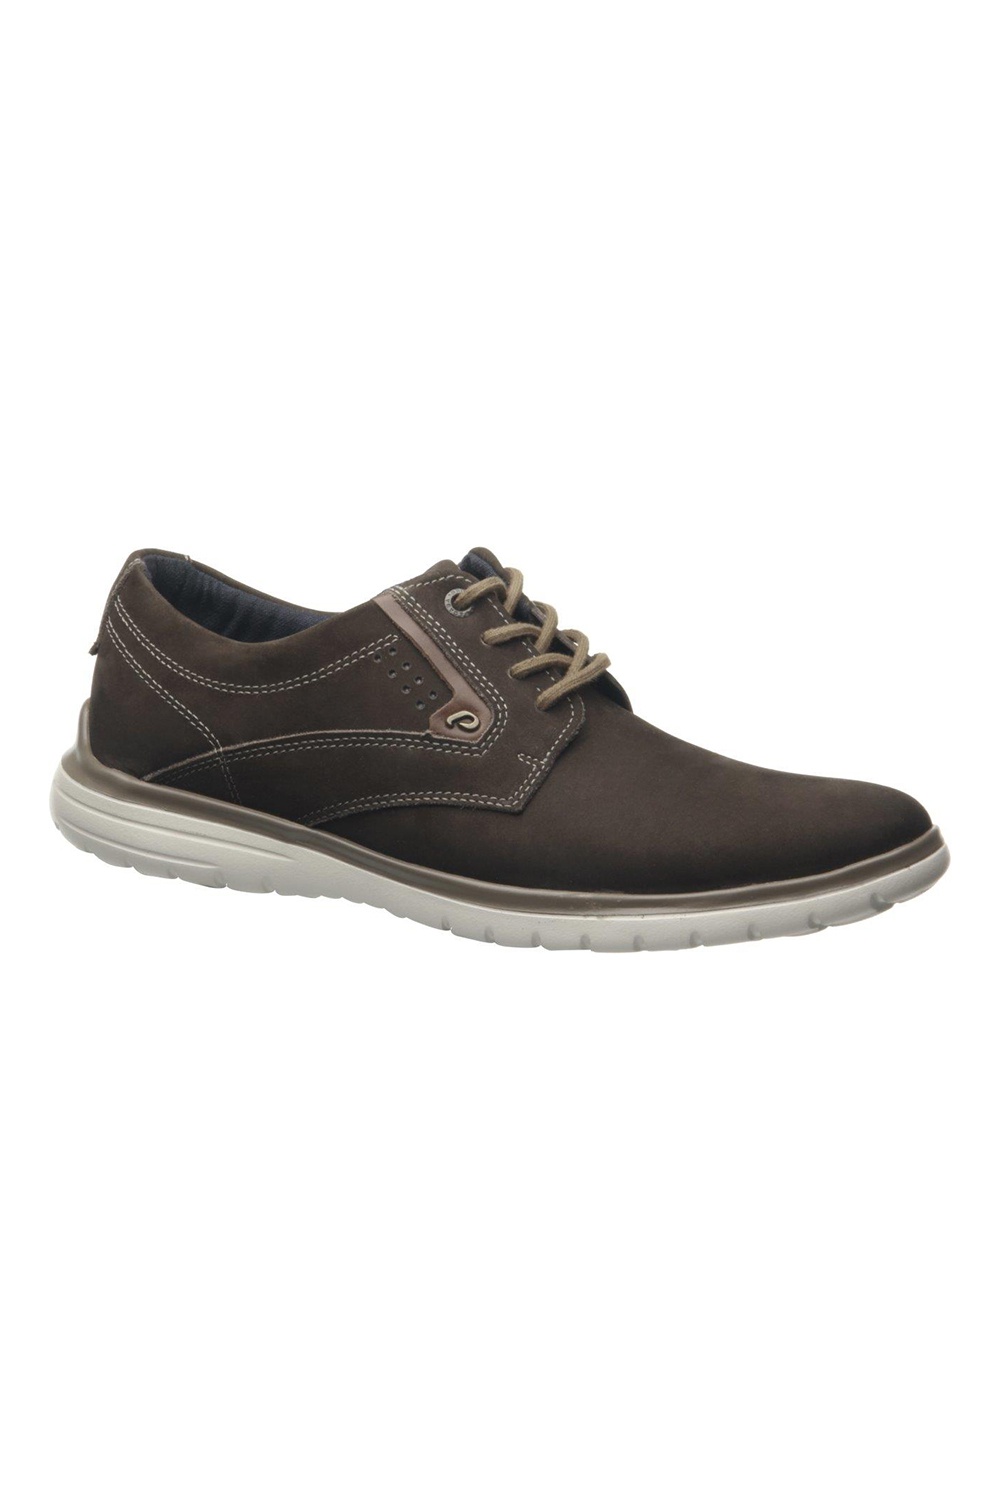 Pegada Brown Casual Shoe | Odel.lk